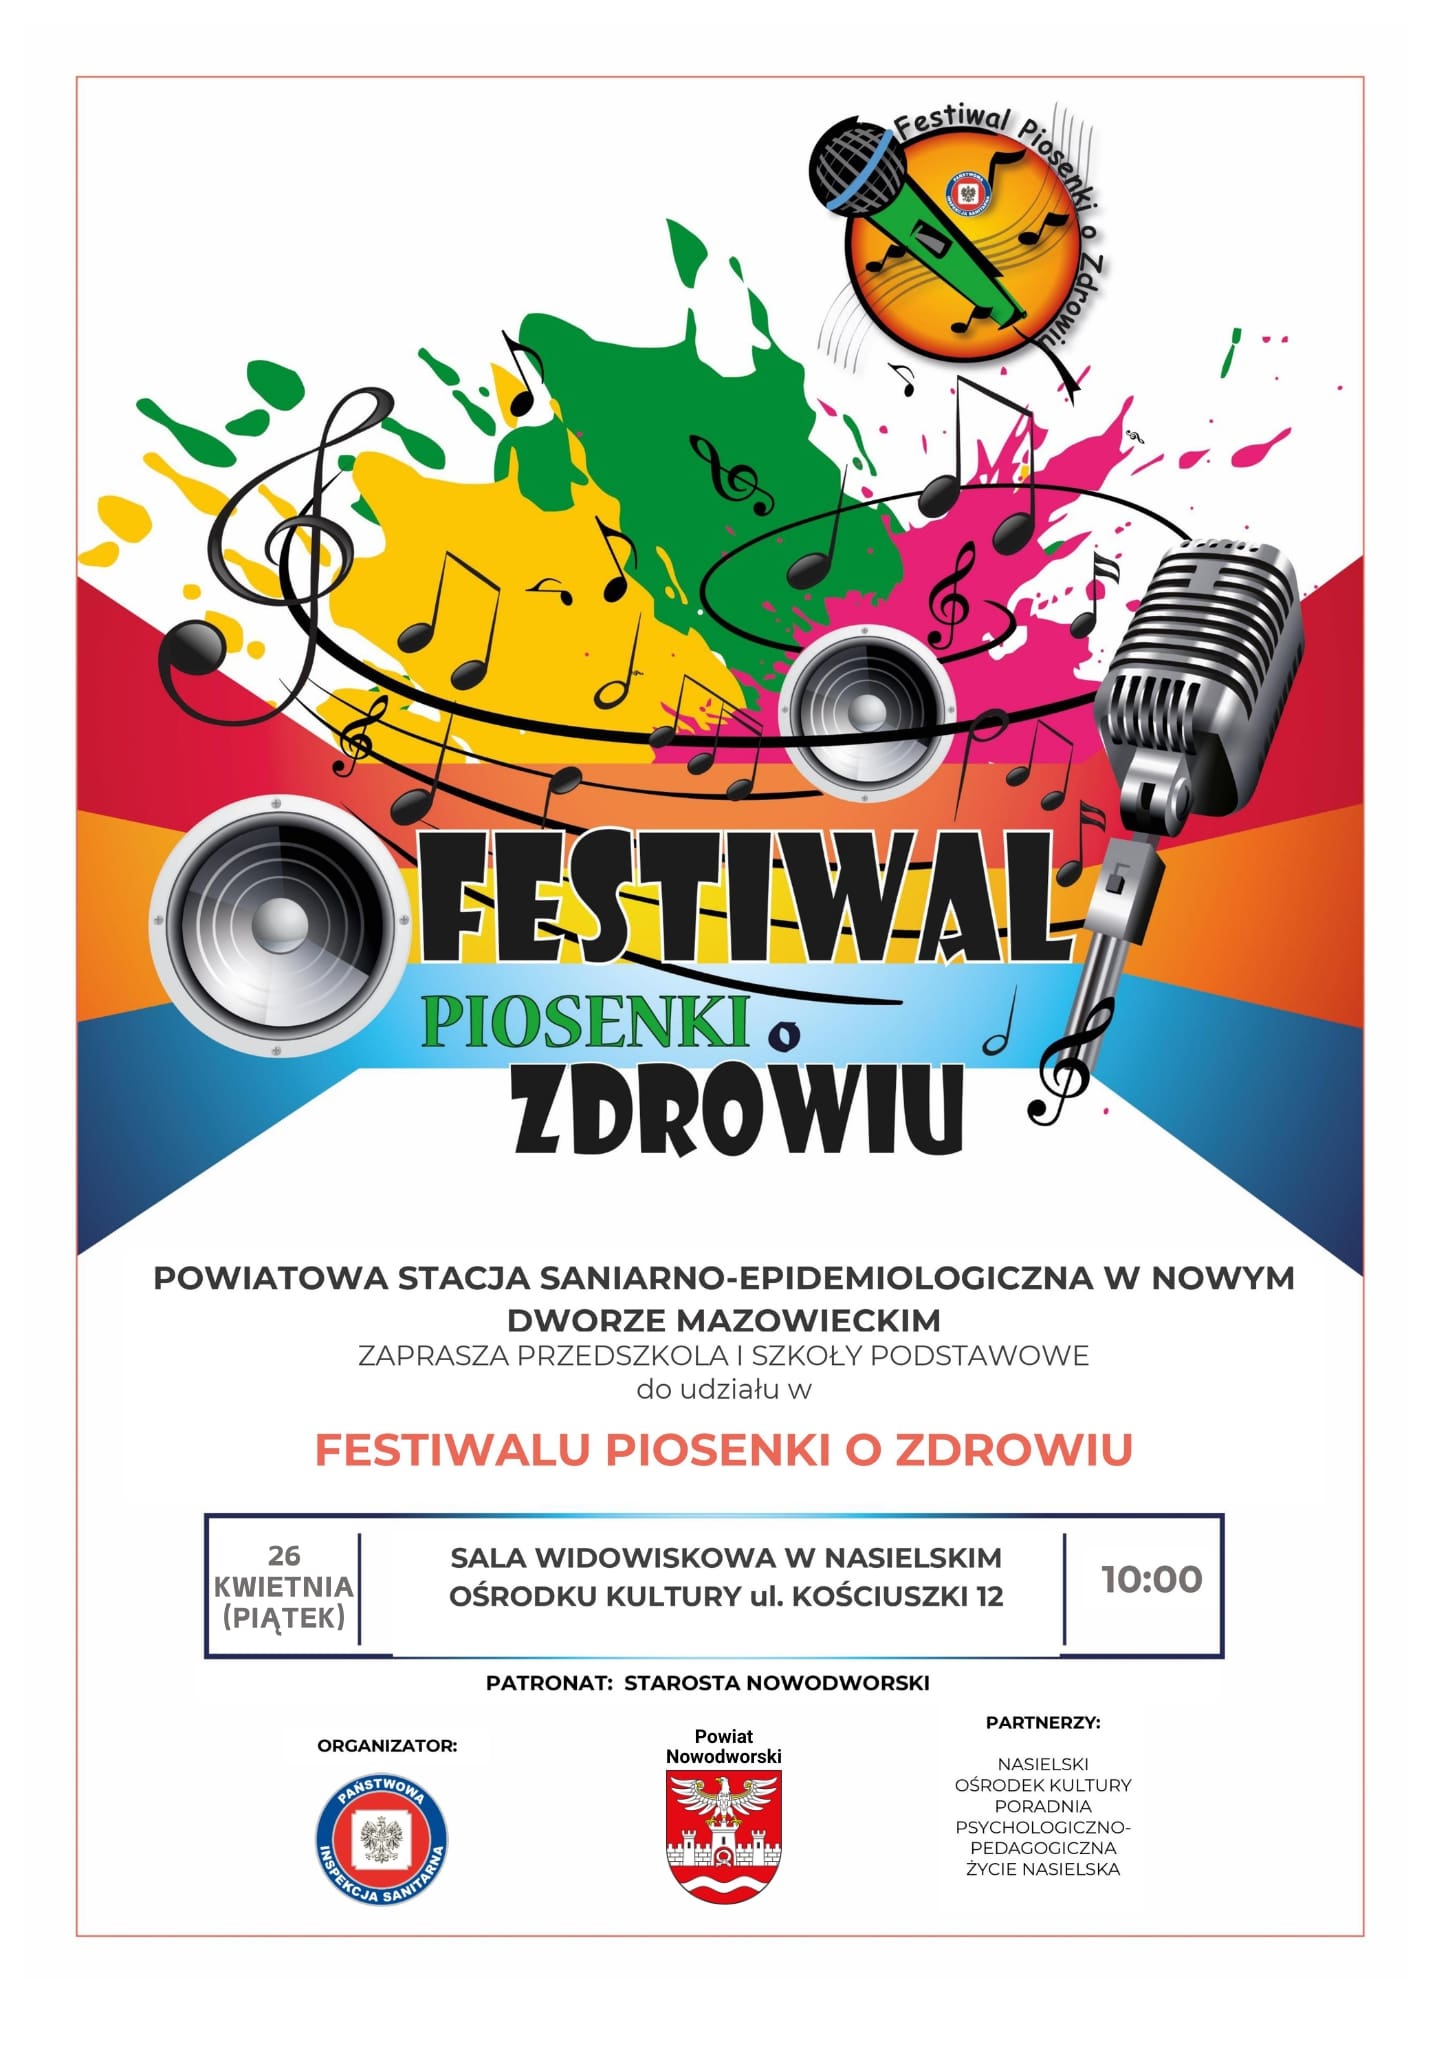 Plakat promujący 31. festiwal piosenki o zdrowiu etap powiatowy